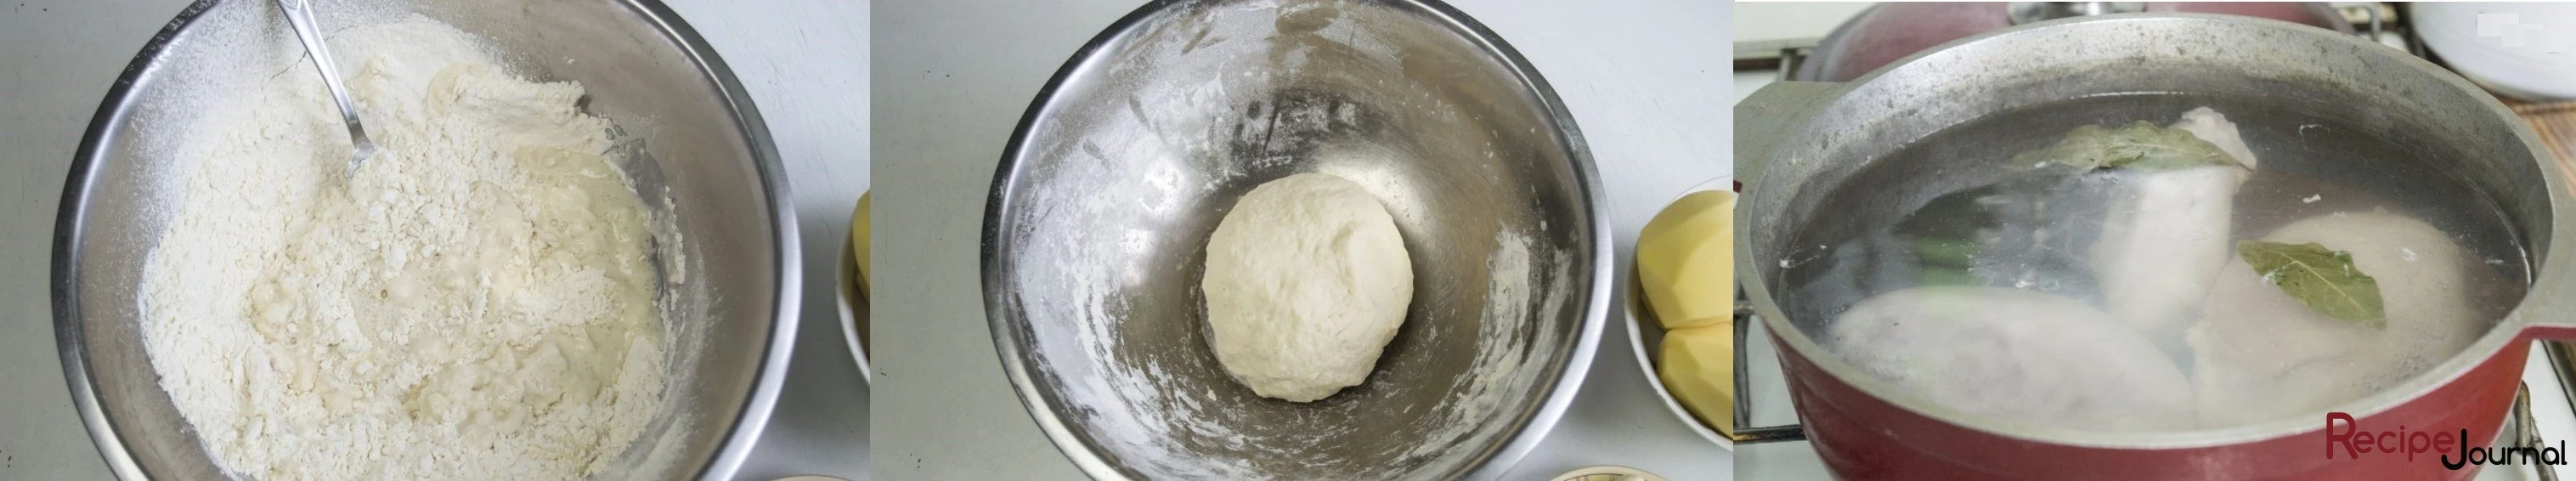 Для начала сделаем тесто. Муку заливаем горячим бульоном и замешиваем крутое тесто. Отставляем его минут на 15. Ставим на огонь воду, кладем специи, соль и опускаем мясо. Варим до готовности.